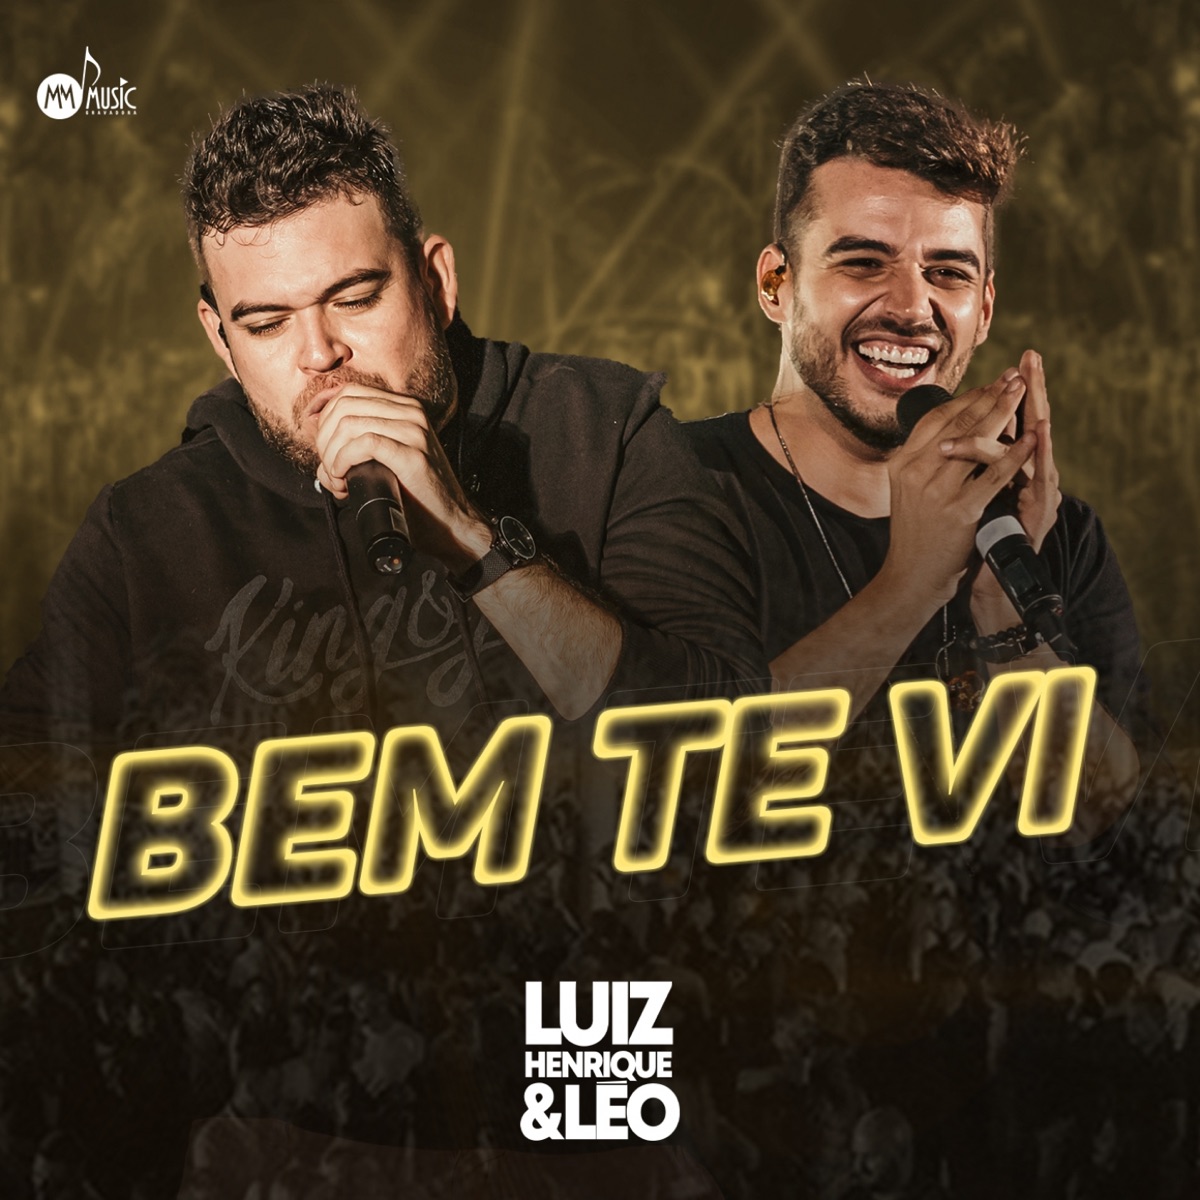 Expectativa de Ficante - Song by Luiz Henrique e Leo - Apple Music